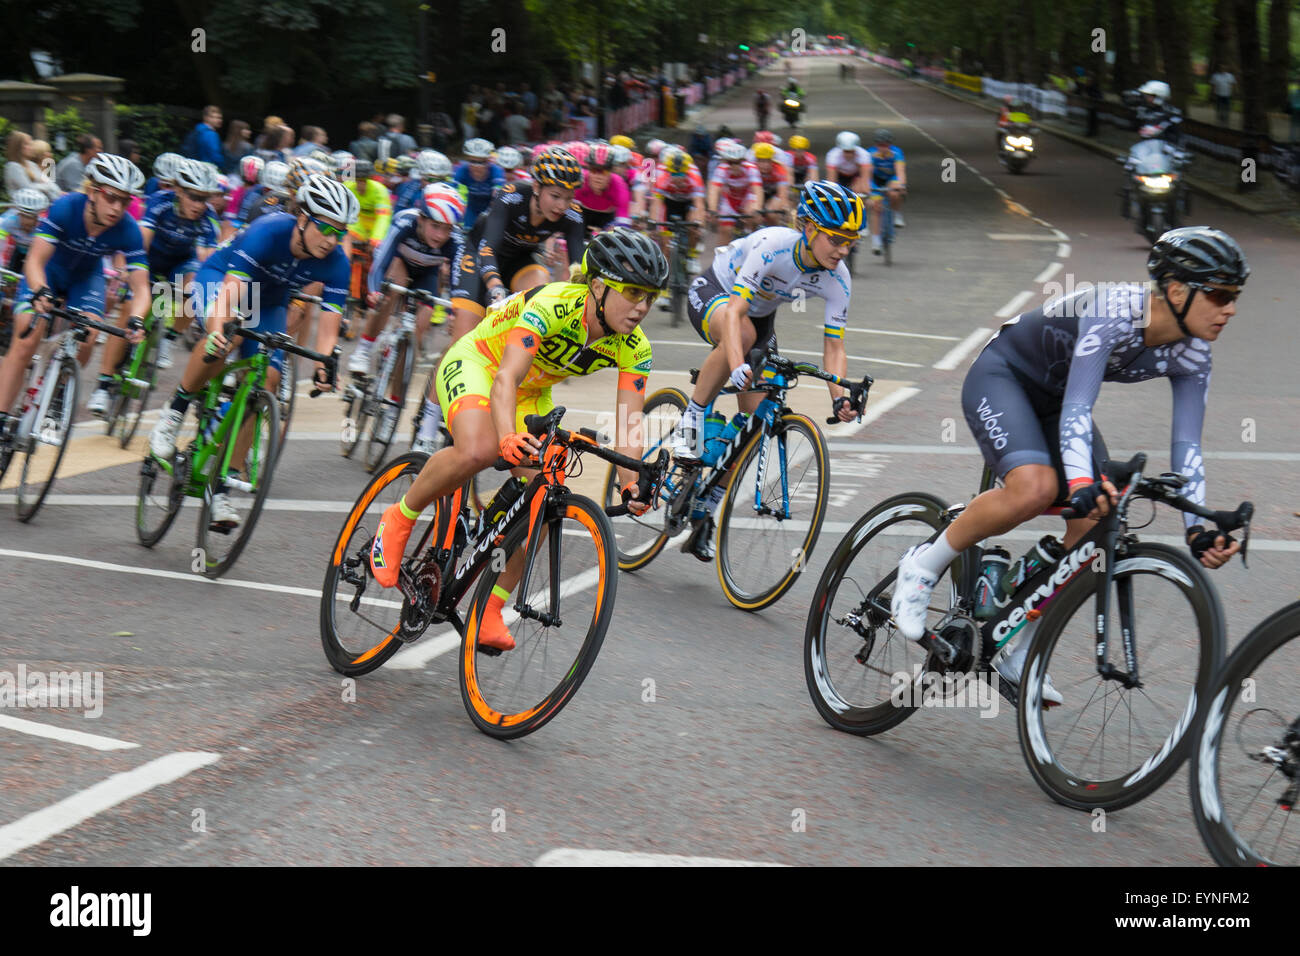 Westminster, Londres, 1 de agosto de 2015. Top Las ciclistas competir en el Grand Prix de Londres suspensión cautelar alrededor de St James's Park. Foto de stock